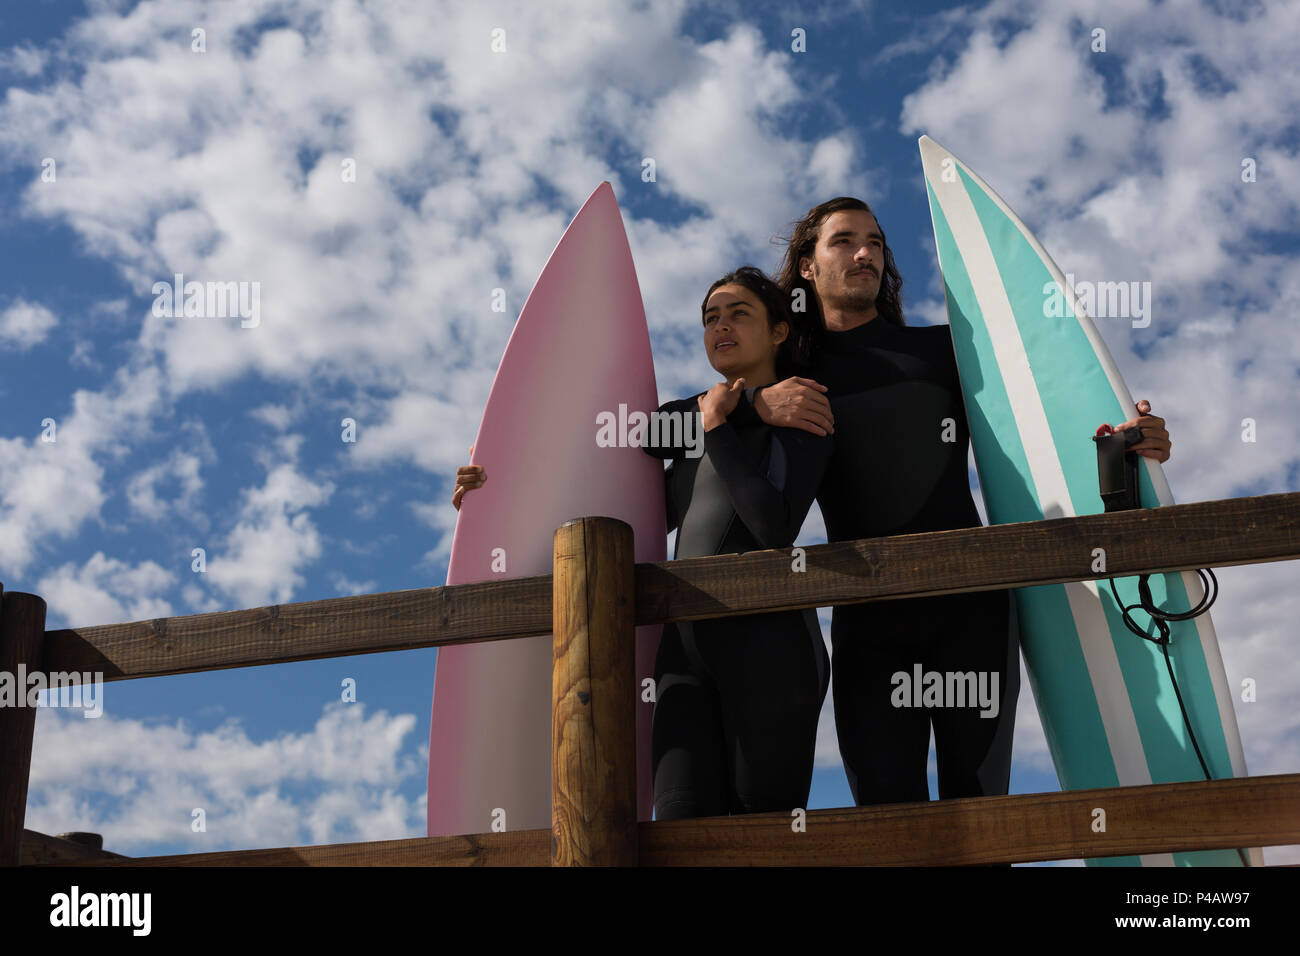 Surfer couple standing with surfboard dans la plage Banque D'Images